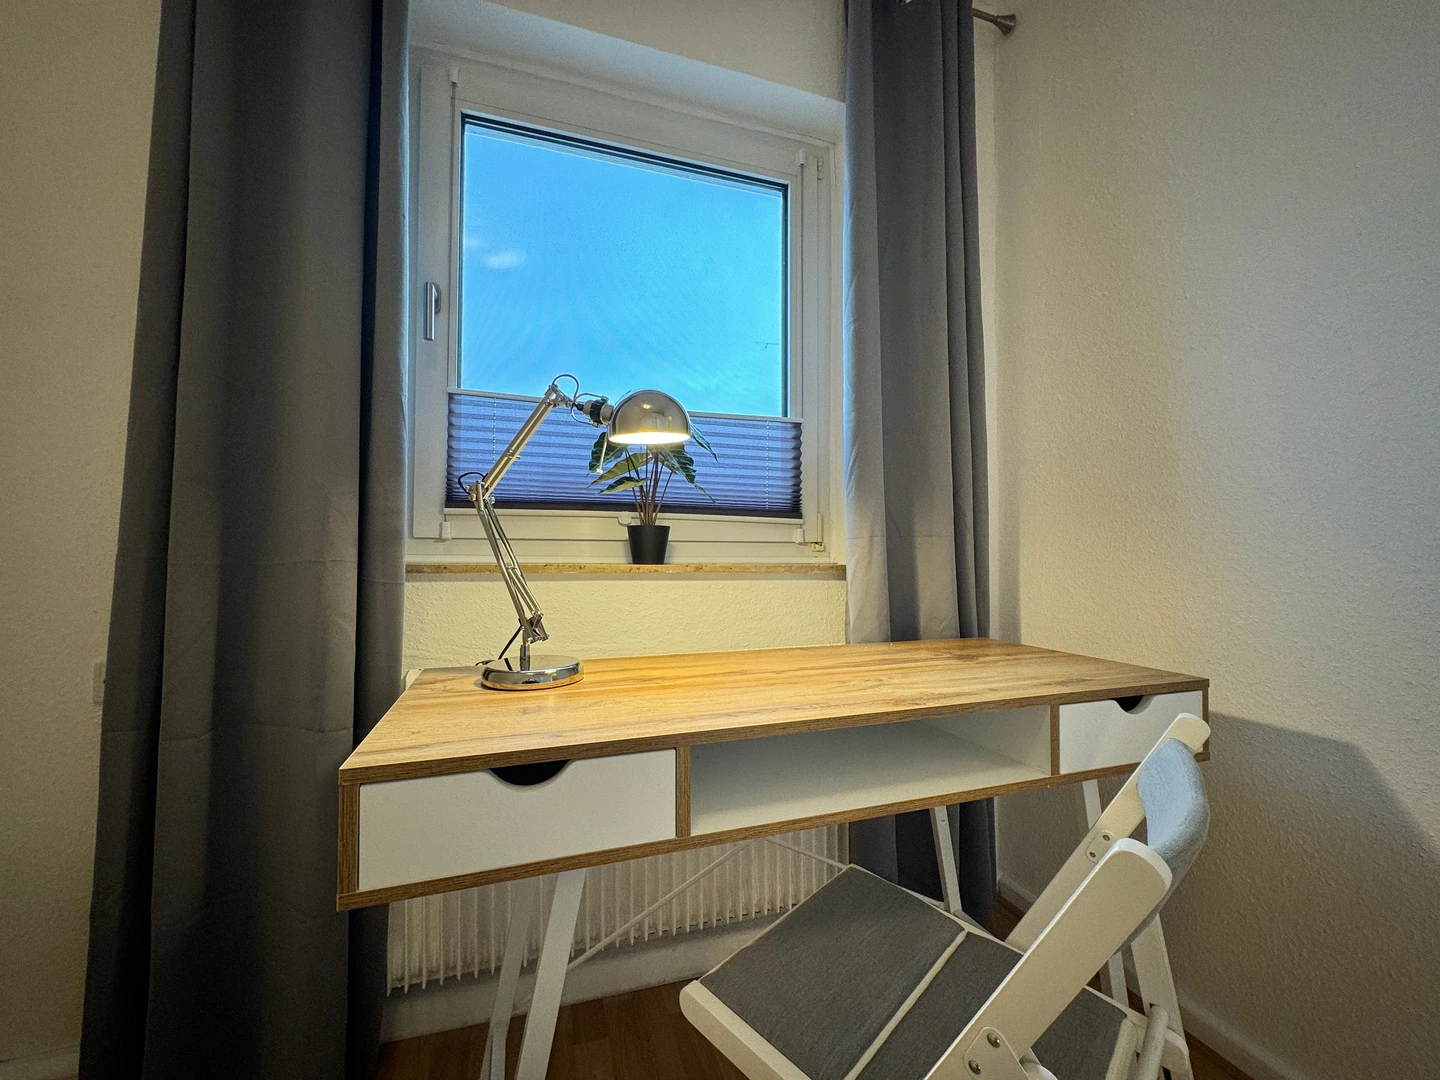 Alquiler de habitaciones por meses en Bielefeld